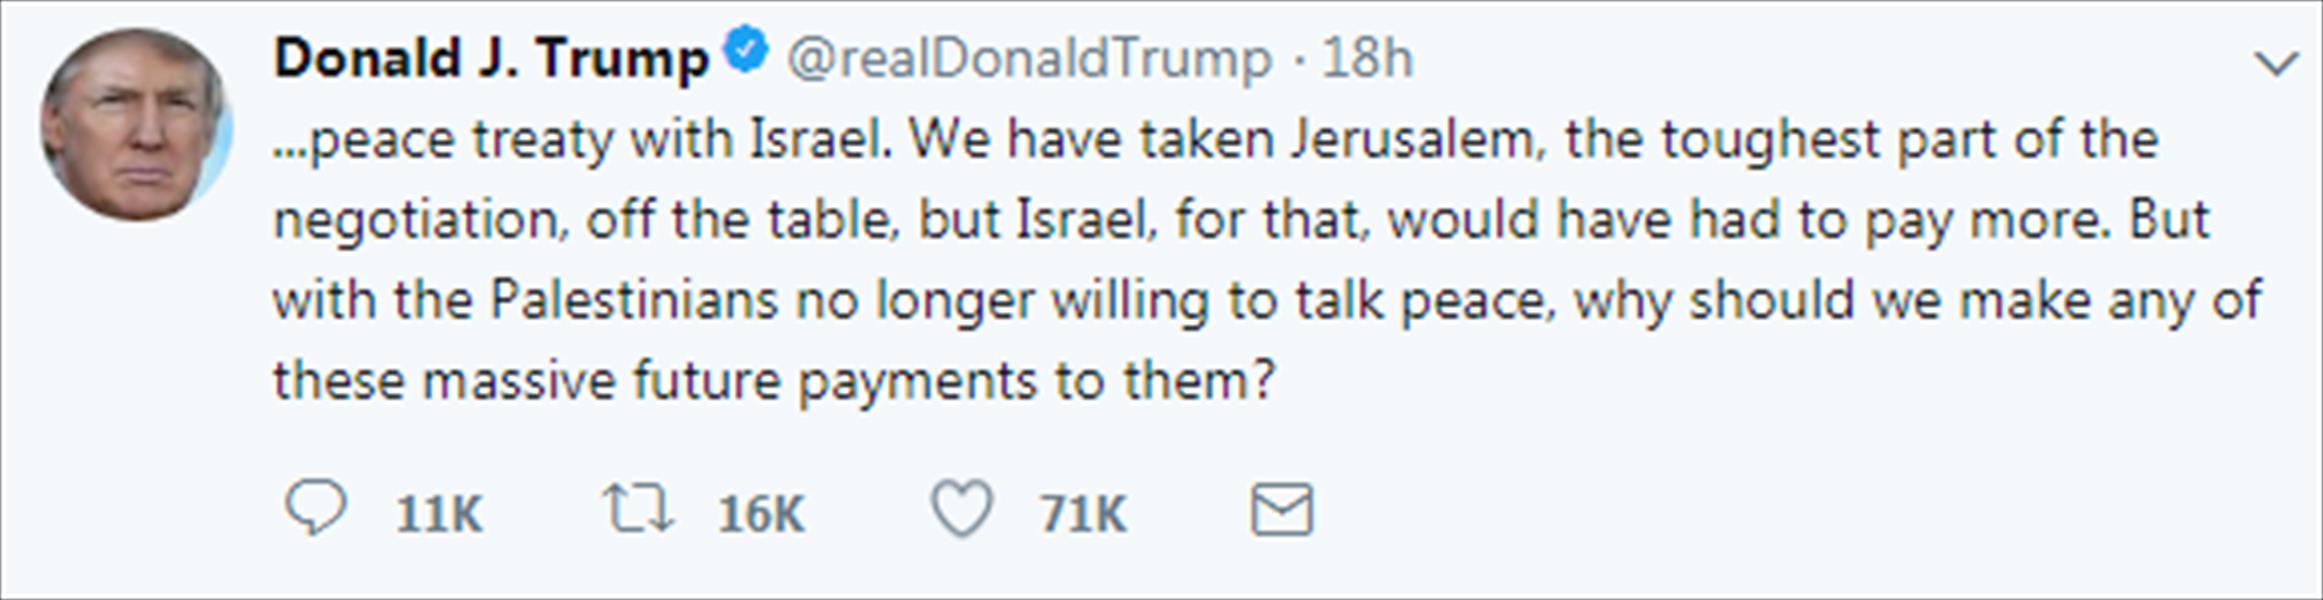 ترامب يناقض نفسه بشأن وضع القدس في مفاوضات السلام